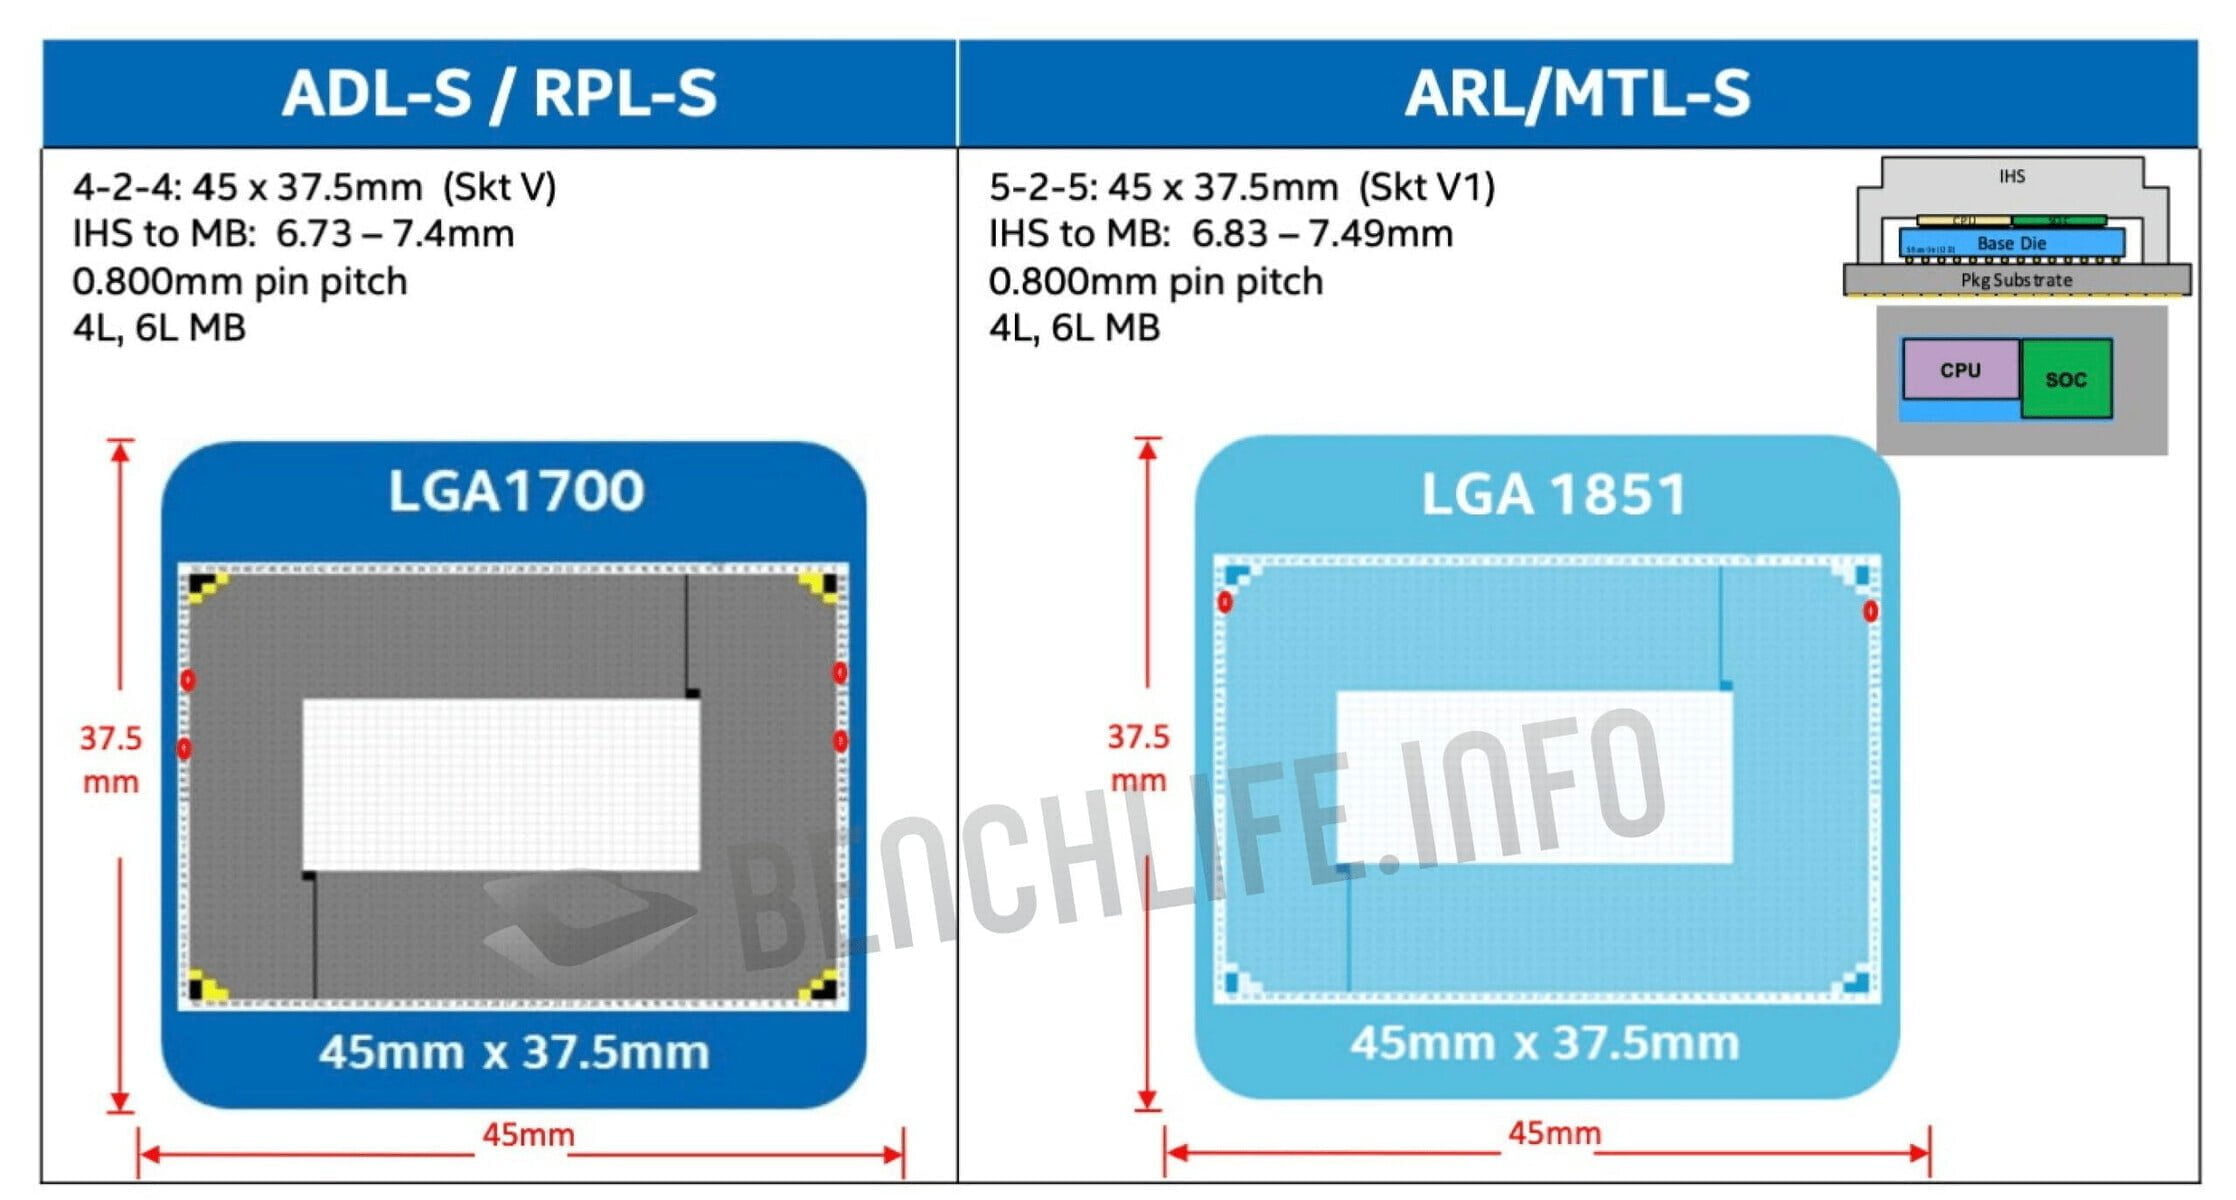 Intel xác nhận LGA1851 sẽ là socket cho thế hệ CPU tiếp theo của hãng - Image 10